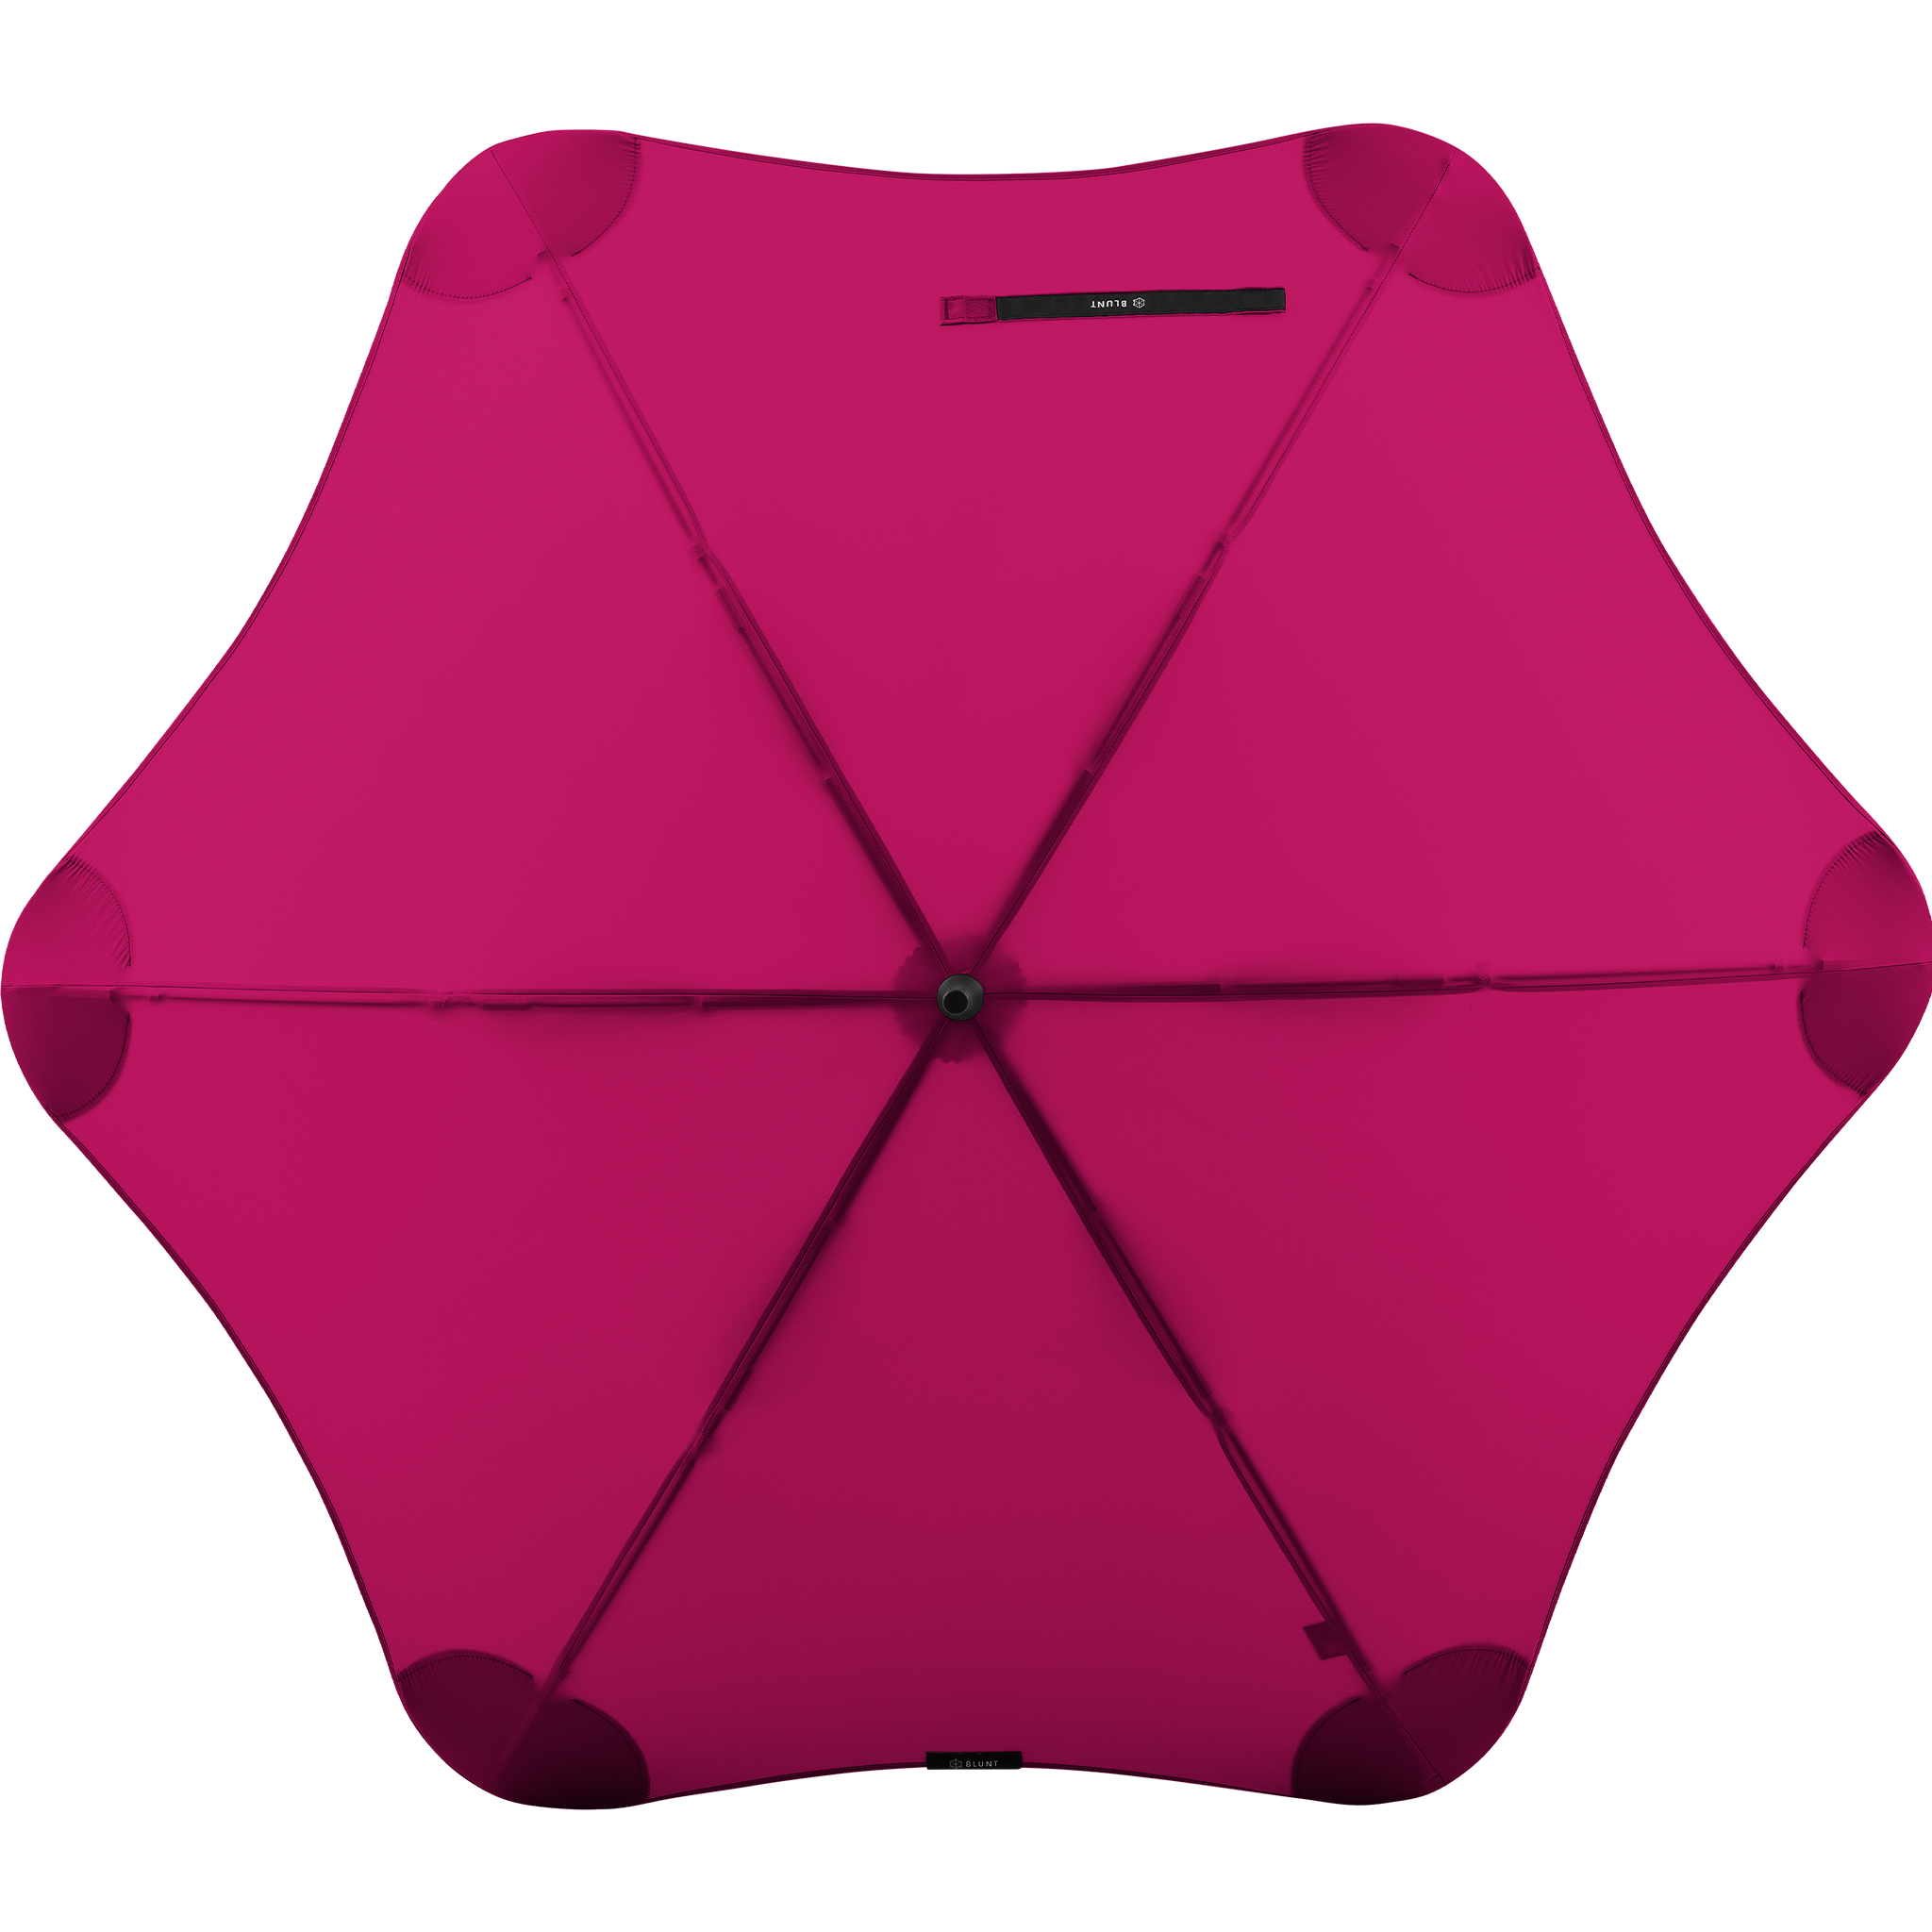 2020 Classic Pink Blunt Umbrella Top View